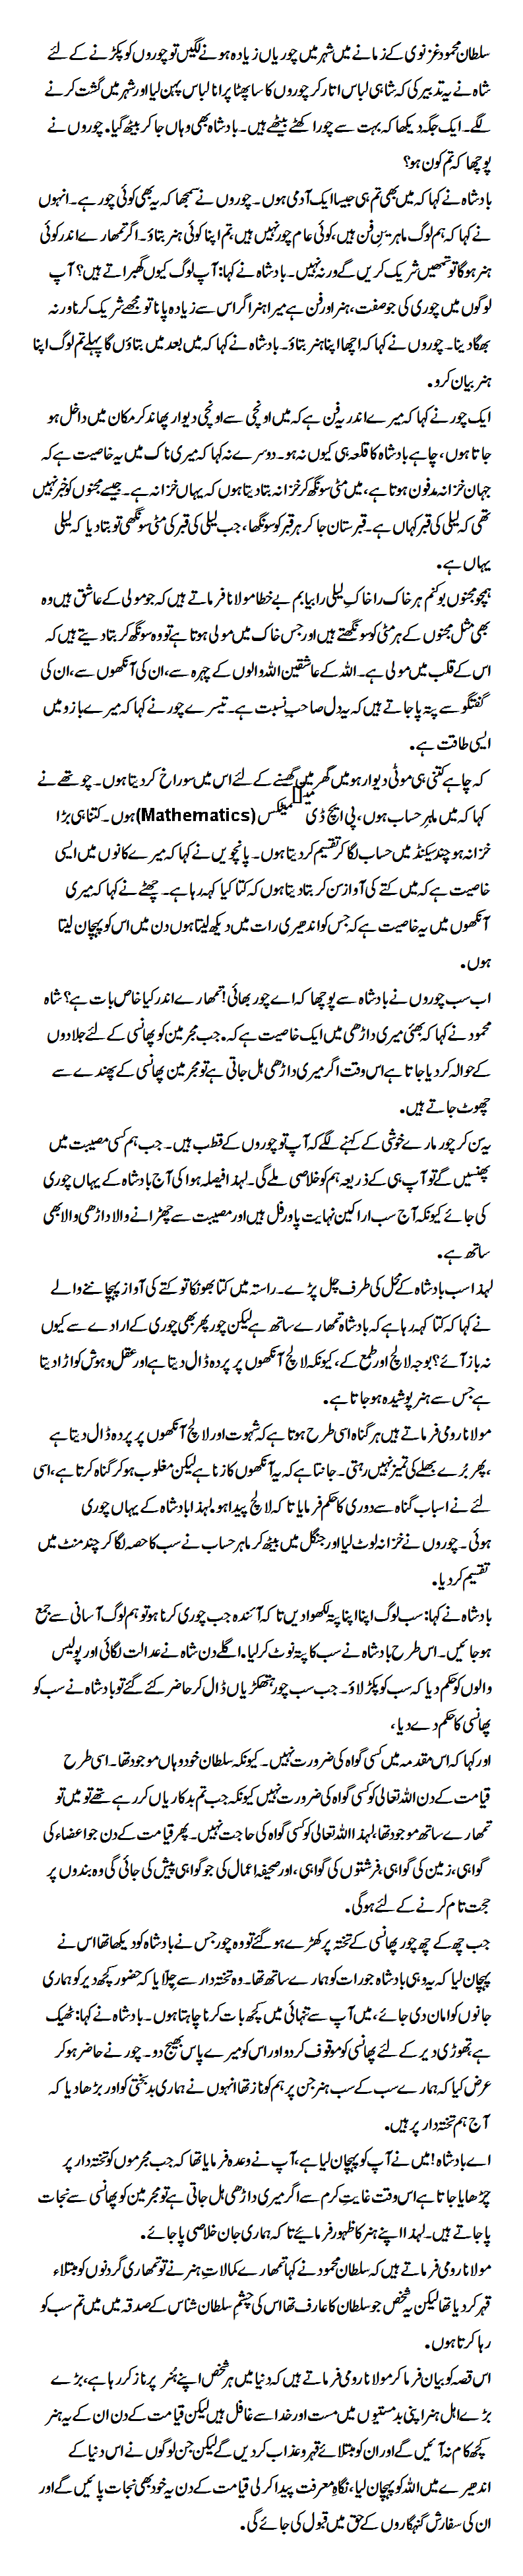 Royal thief story In Urdu